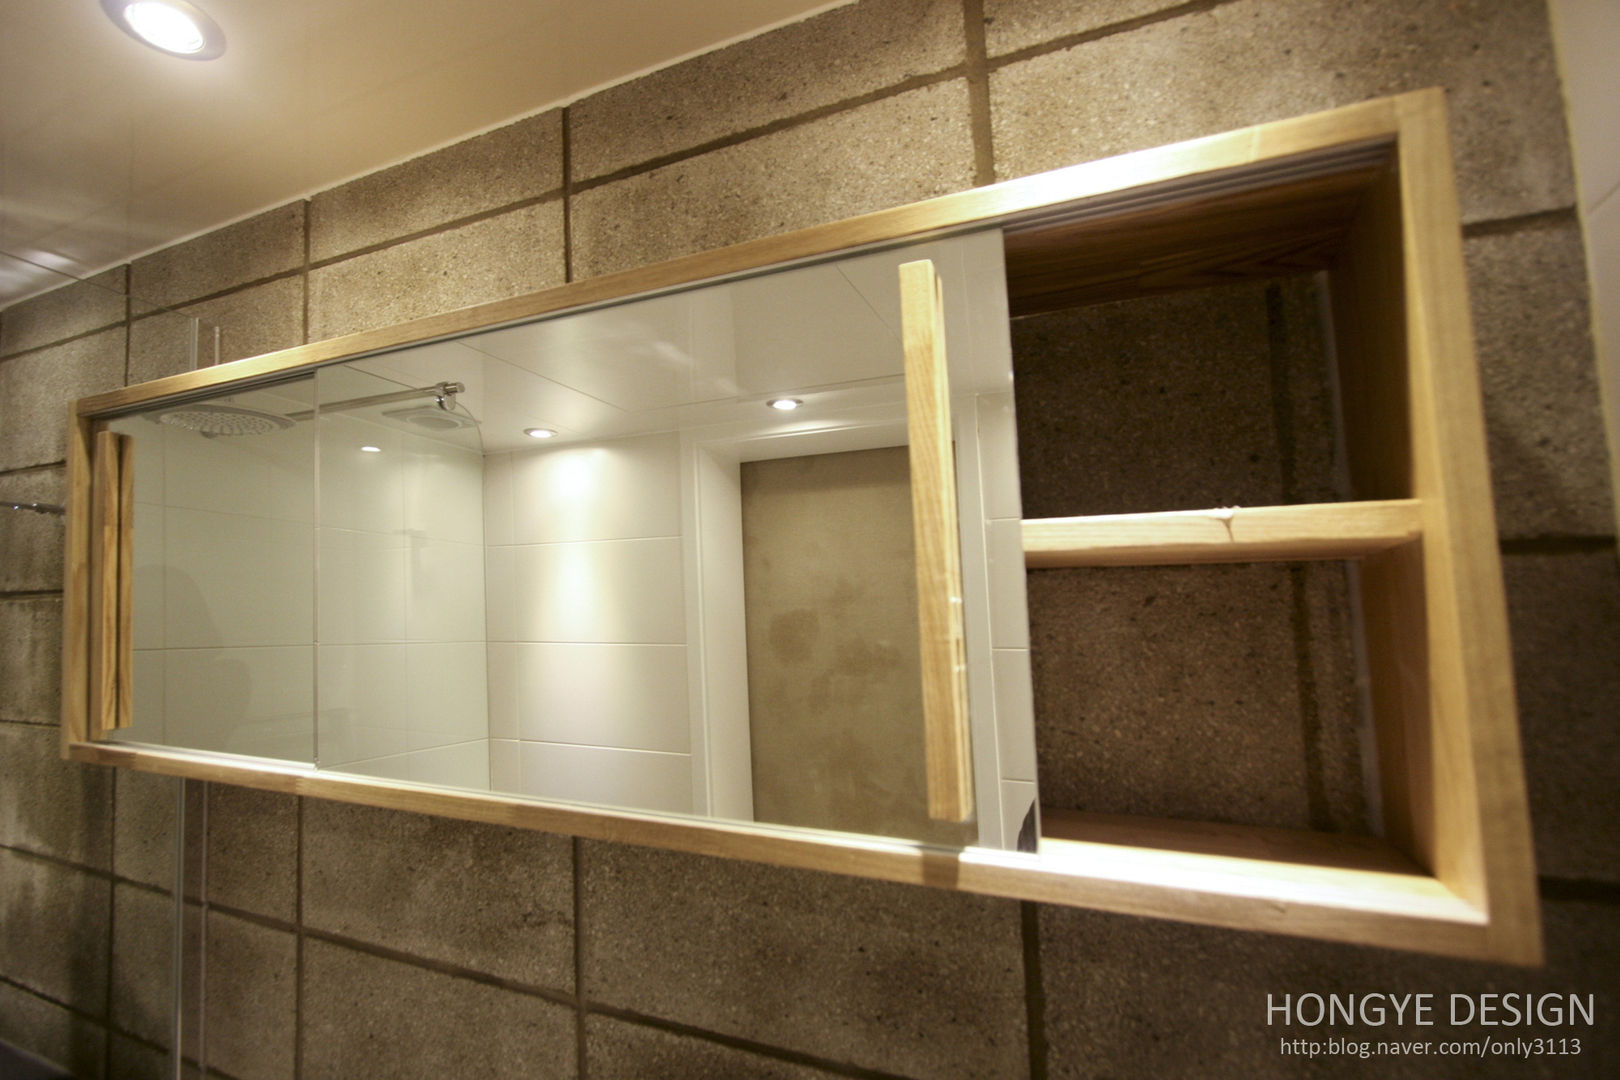 인더스트리얼 느낌의 30평 아파트 인테리어, 홍예디자인 홍예디자인 인더스트리얼 욕실